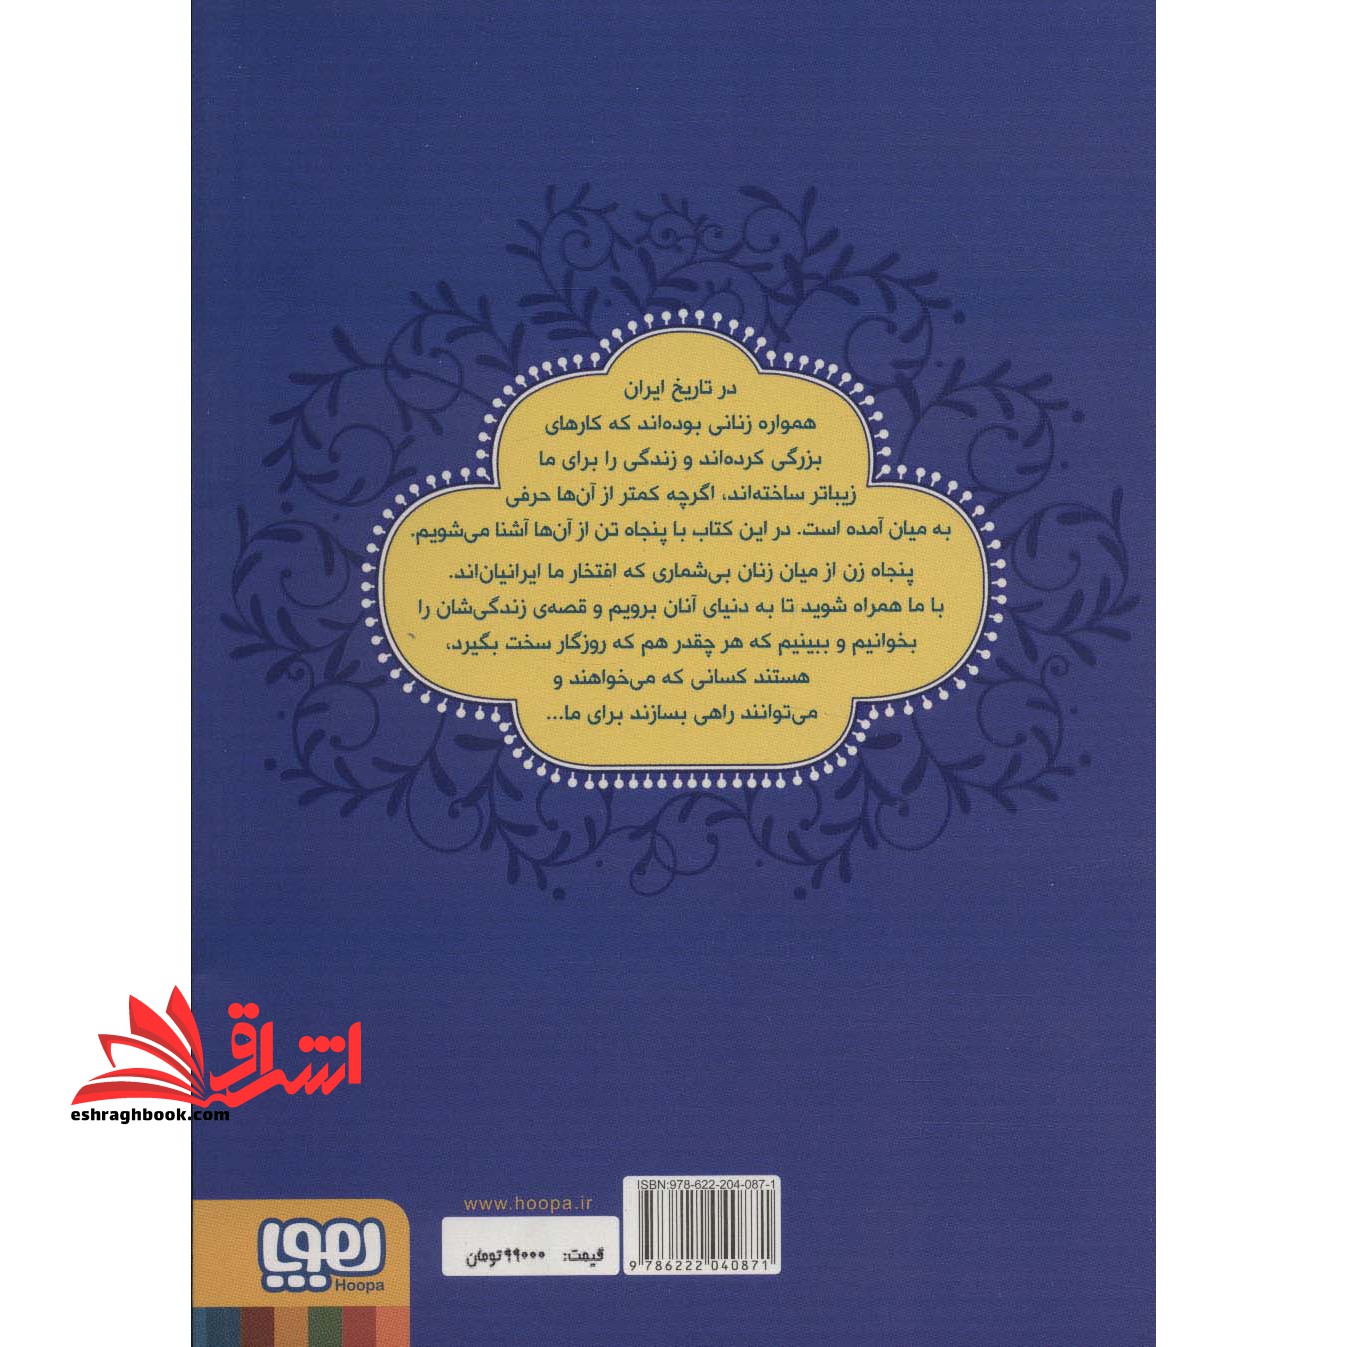 کتاب زنان پیشرو - (داستان هایی برای دختران ایران)